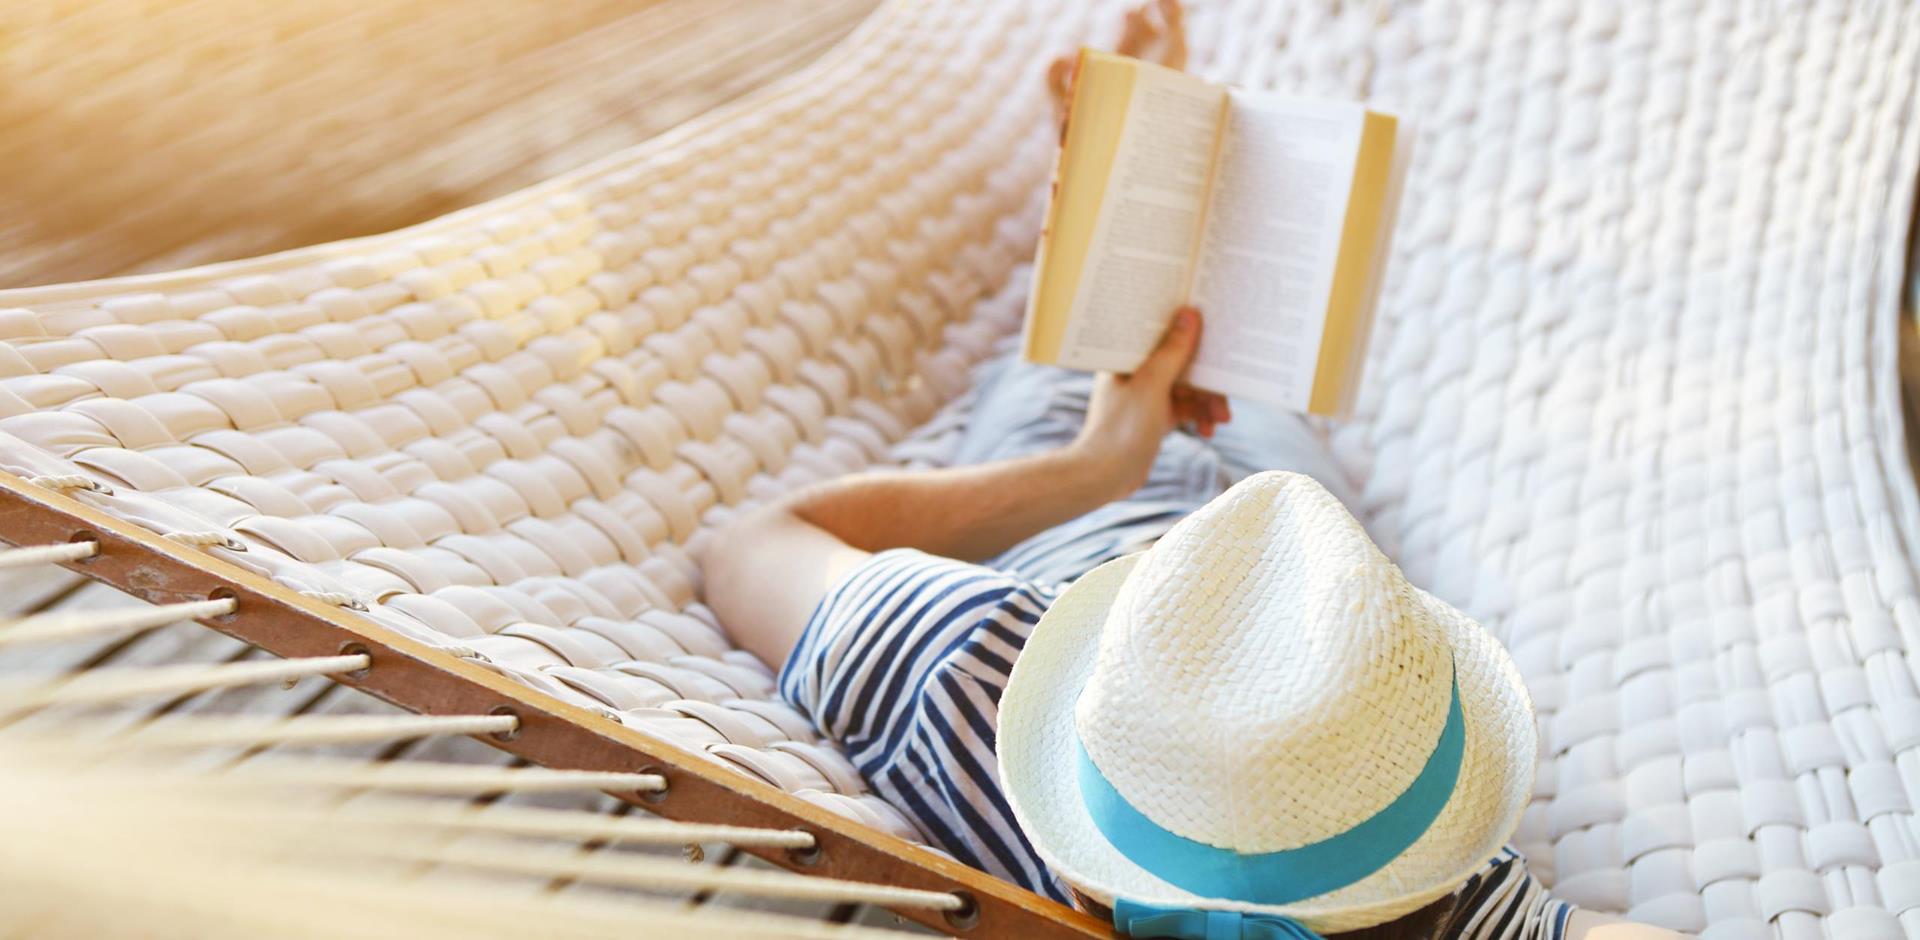 Man reading book on hammock, digital detox holidays